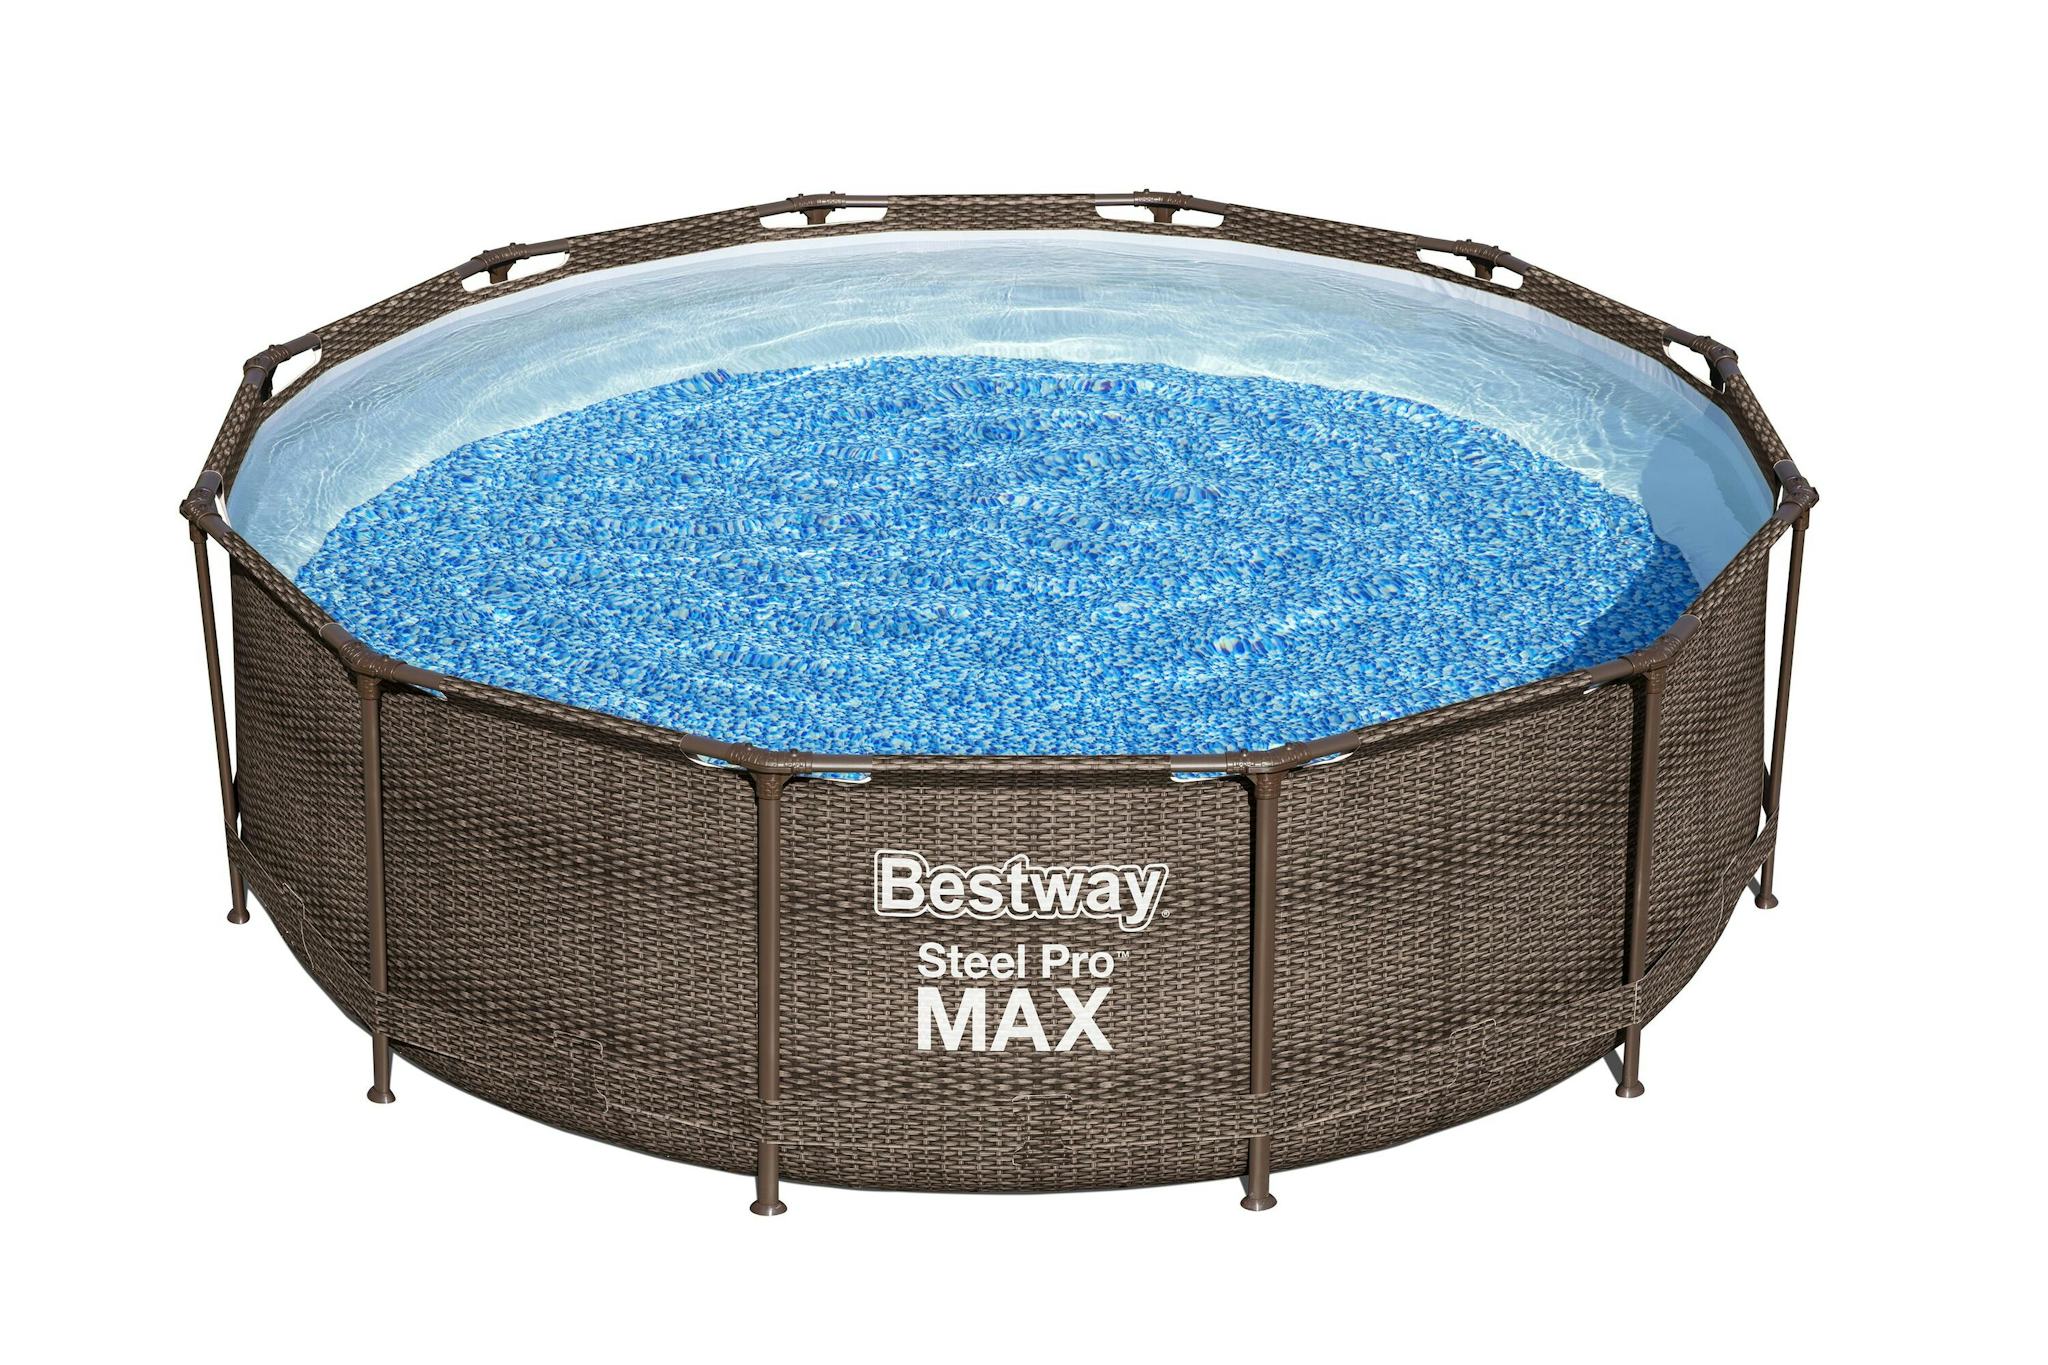 Piscines hors sol Piscine hors sol ronde Steel Pro Max™ 366 x 100 cm effet rotin avec filtre à cartouche, échelle Bestway 4